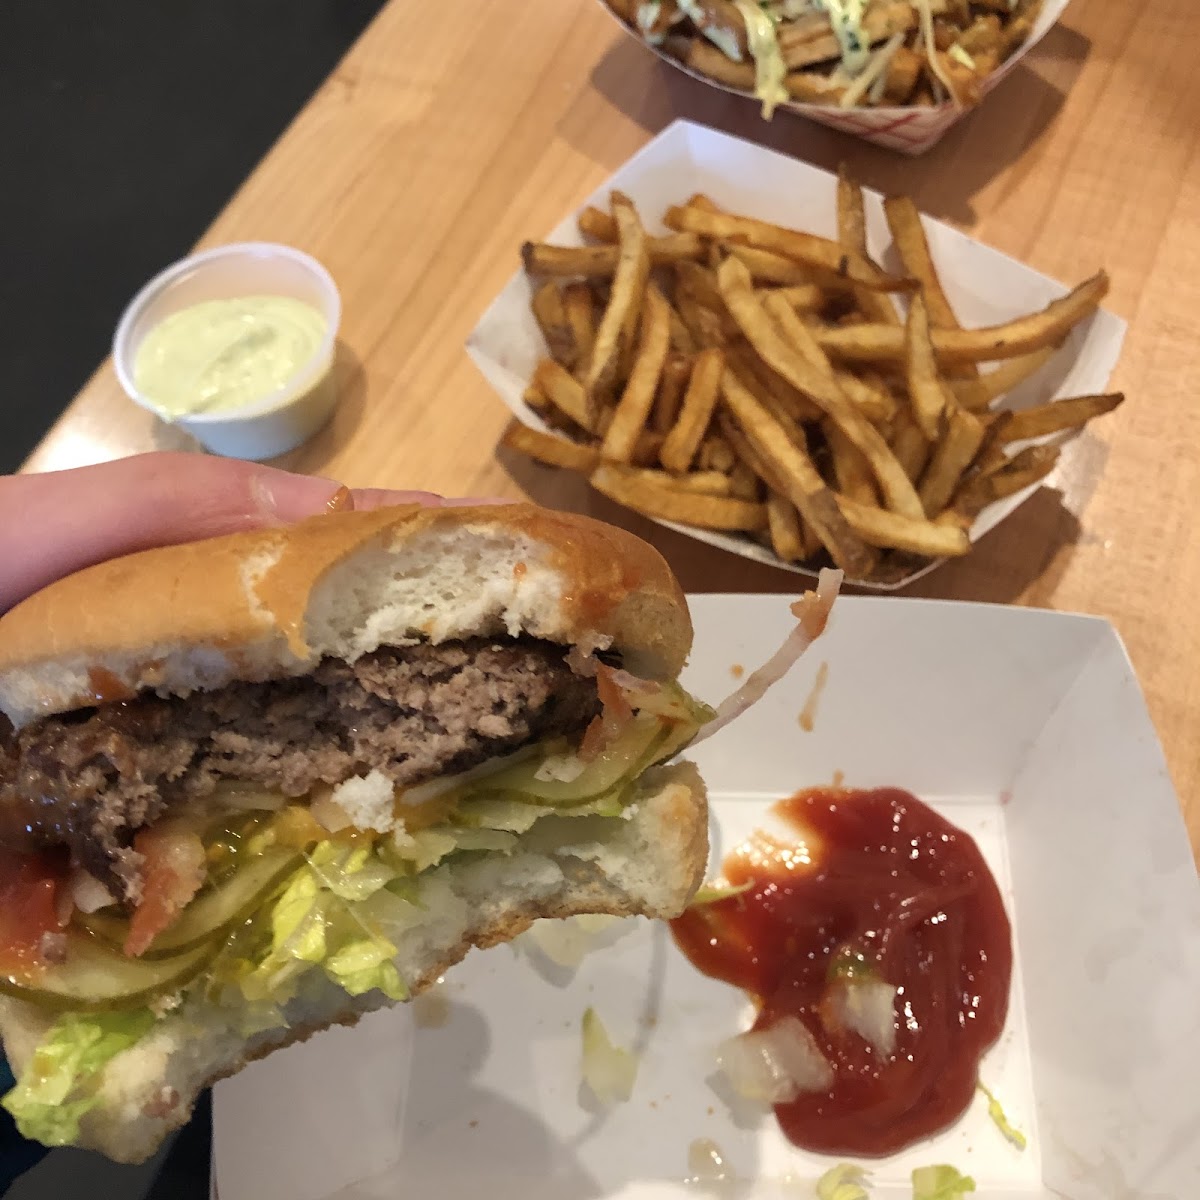 Burger with Udi’s GF bun, plain